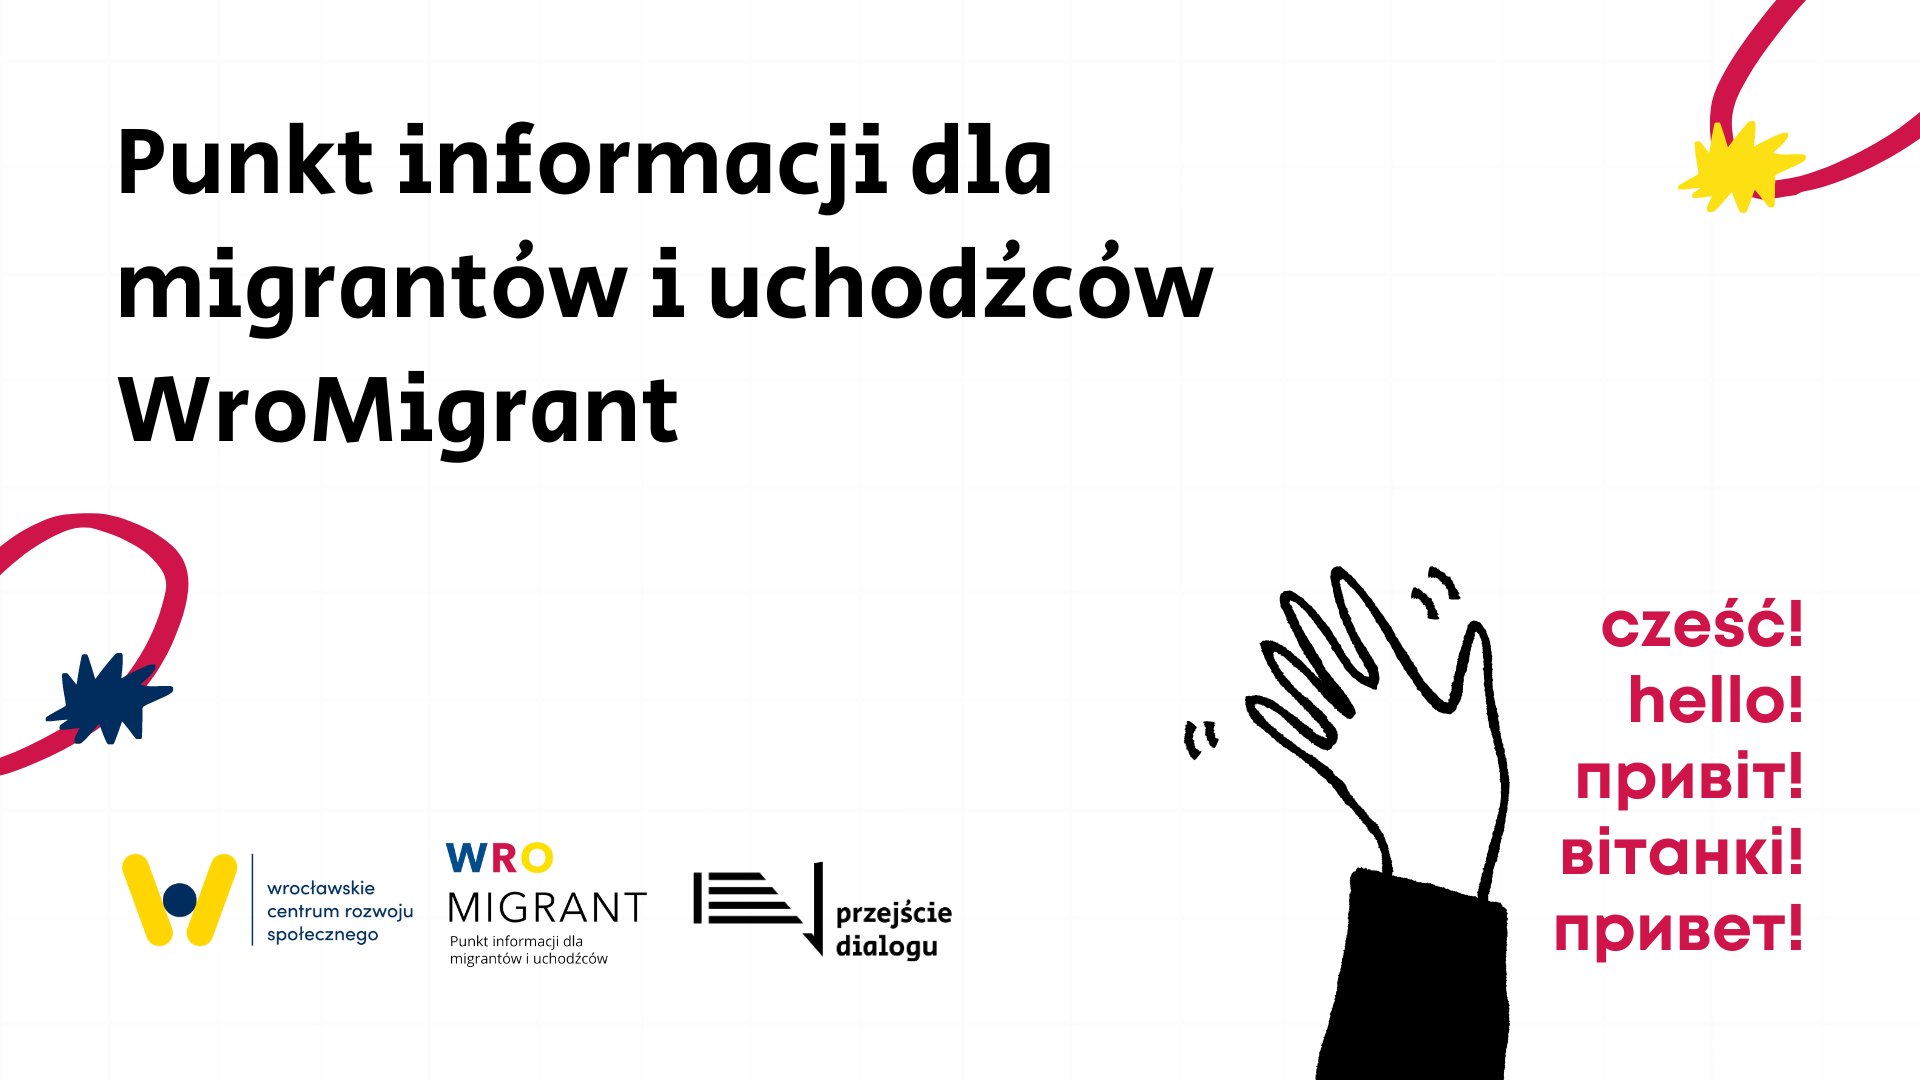 Na obrazku znajduje się nazwa wydarzenia cyklicznego, czyli "Punkt informacji dla migrantów i uchodźców WroMigrant". Na górze umieszczony został rodzaj wydarzenia, czyli bezpłatne szkolenie oraz data i godzina wydarzenia, czyli 6 września, 11:00. W lewym dolnym rogu znajdują się logotypy Wrocławskiego Centrum Rozwoju Społecznego, WroMigranta i Przejścia Dialogu. W prawym dolnym rogu znajduje się napis “сześć! hello! привіт! вітанкі! привет!” W celach dekoracyjnych umieszczone zostały również ilustracje: machająca ręka, gwiazdki i abstrakcyjne kształty geometryczne. Tło grafiki białe, napisy czarne i różowe, ilustracje czarne, różowe, żółte i granatowe.